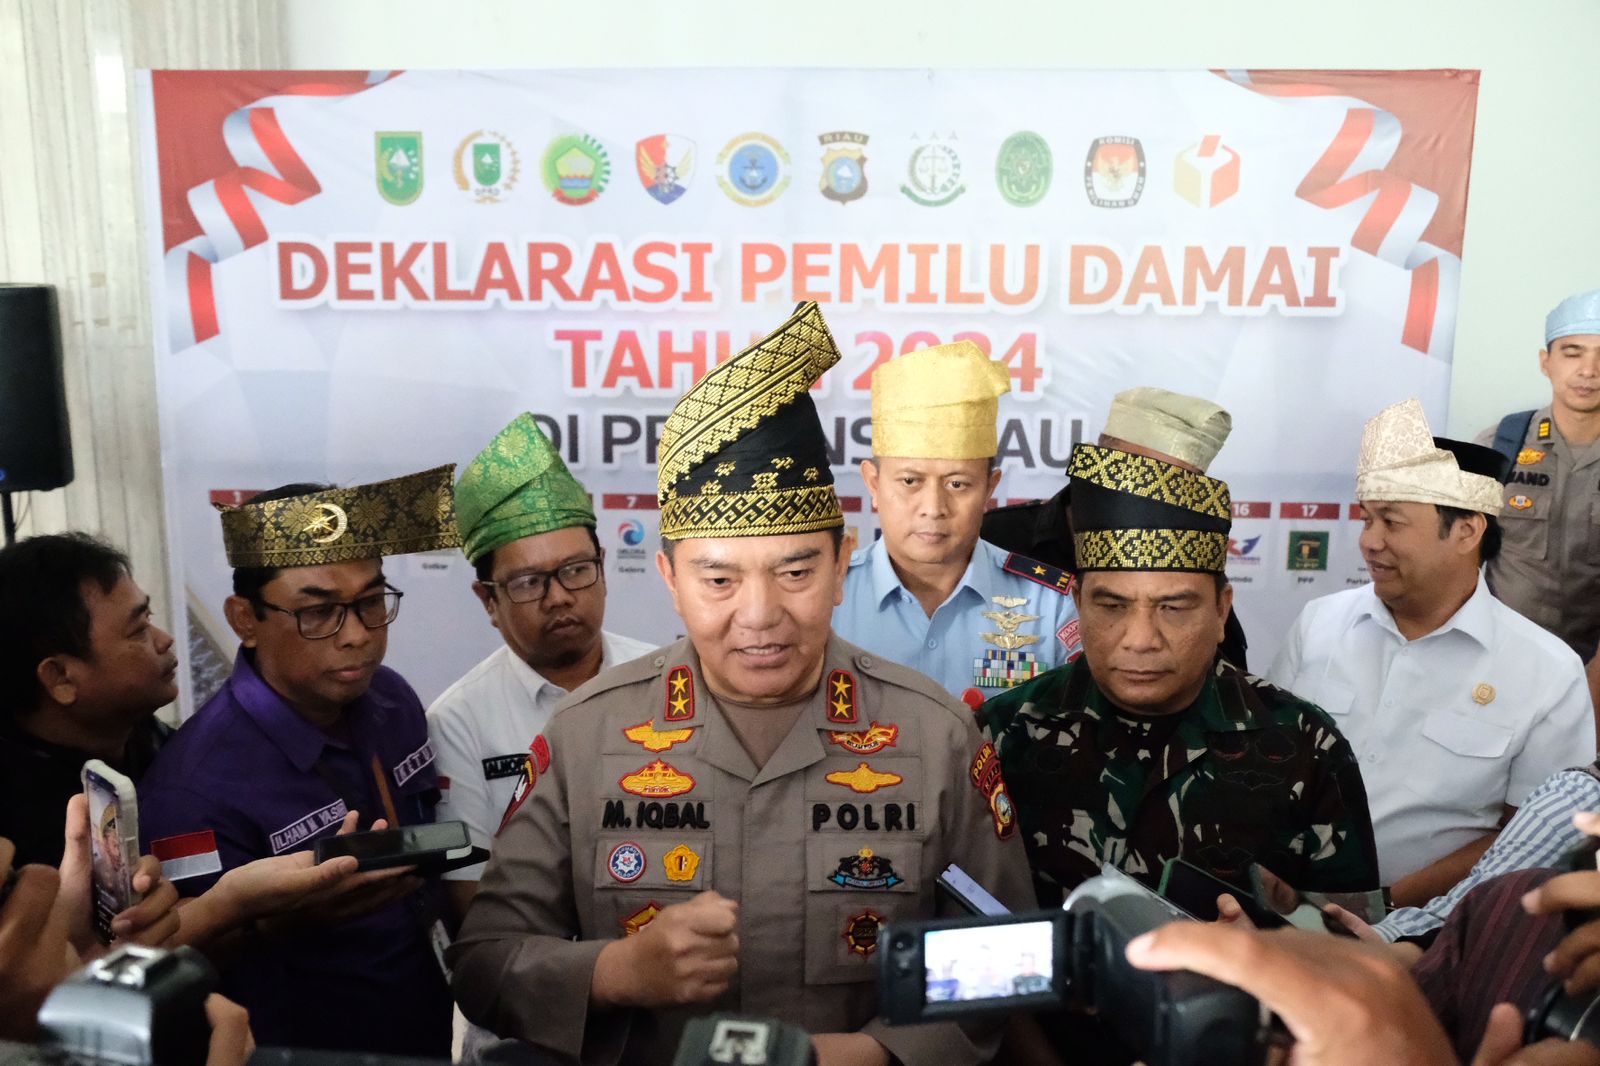 Kapolda Riau Hadiri Deklarasi Pemilu Damai di SKA CoEx